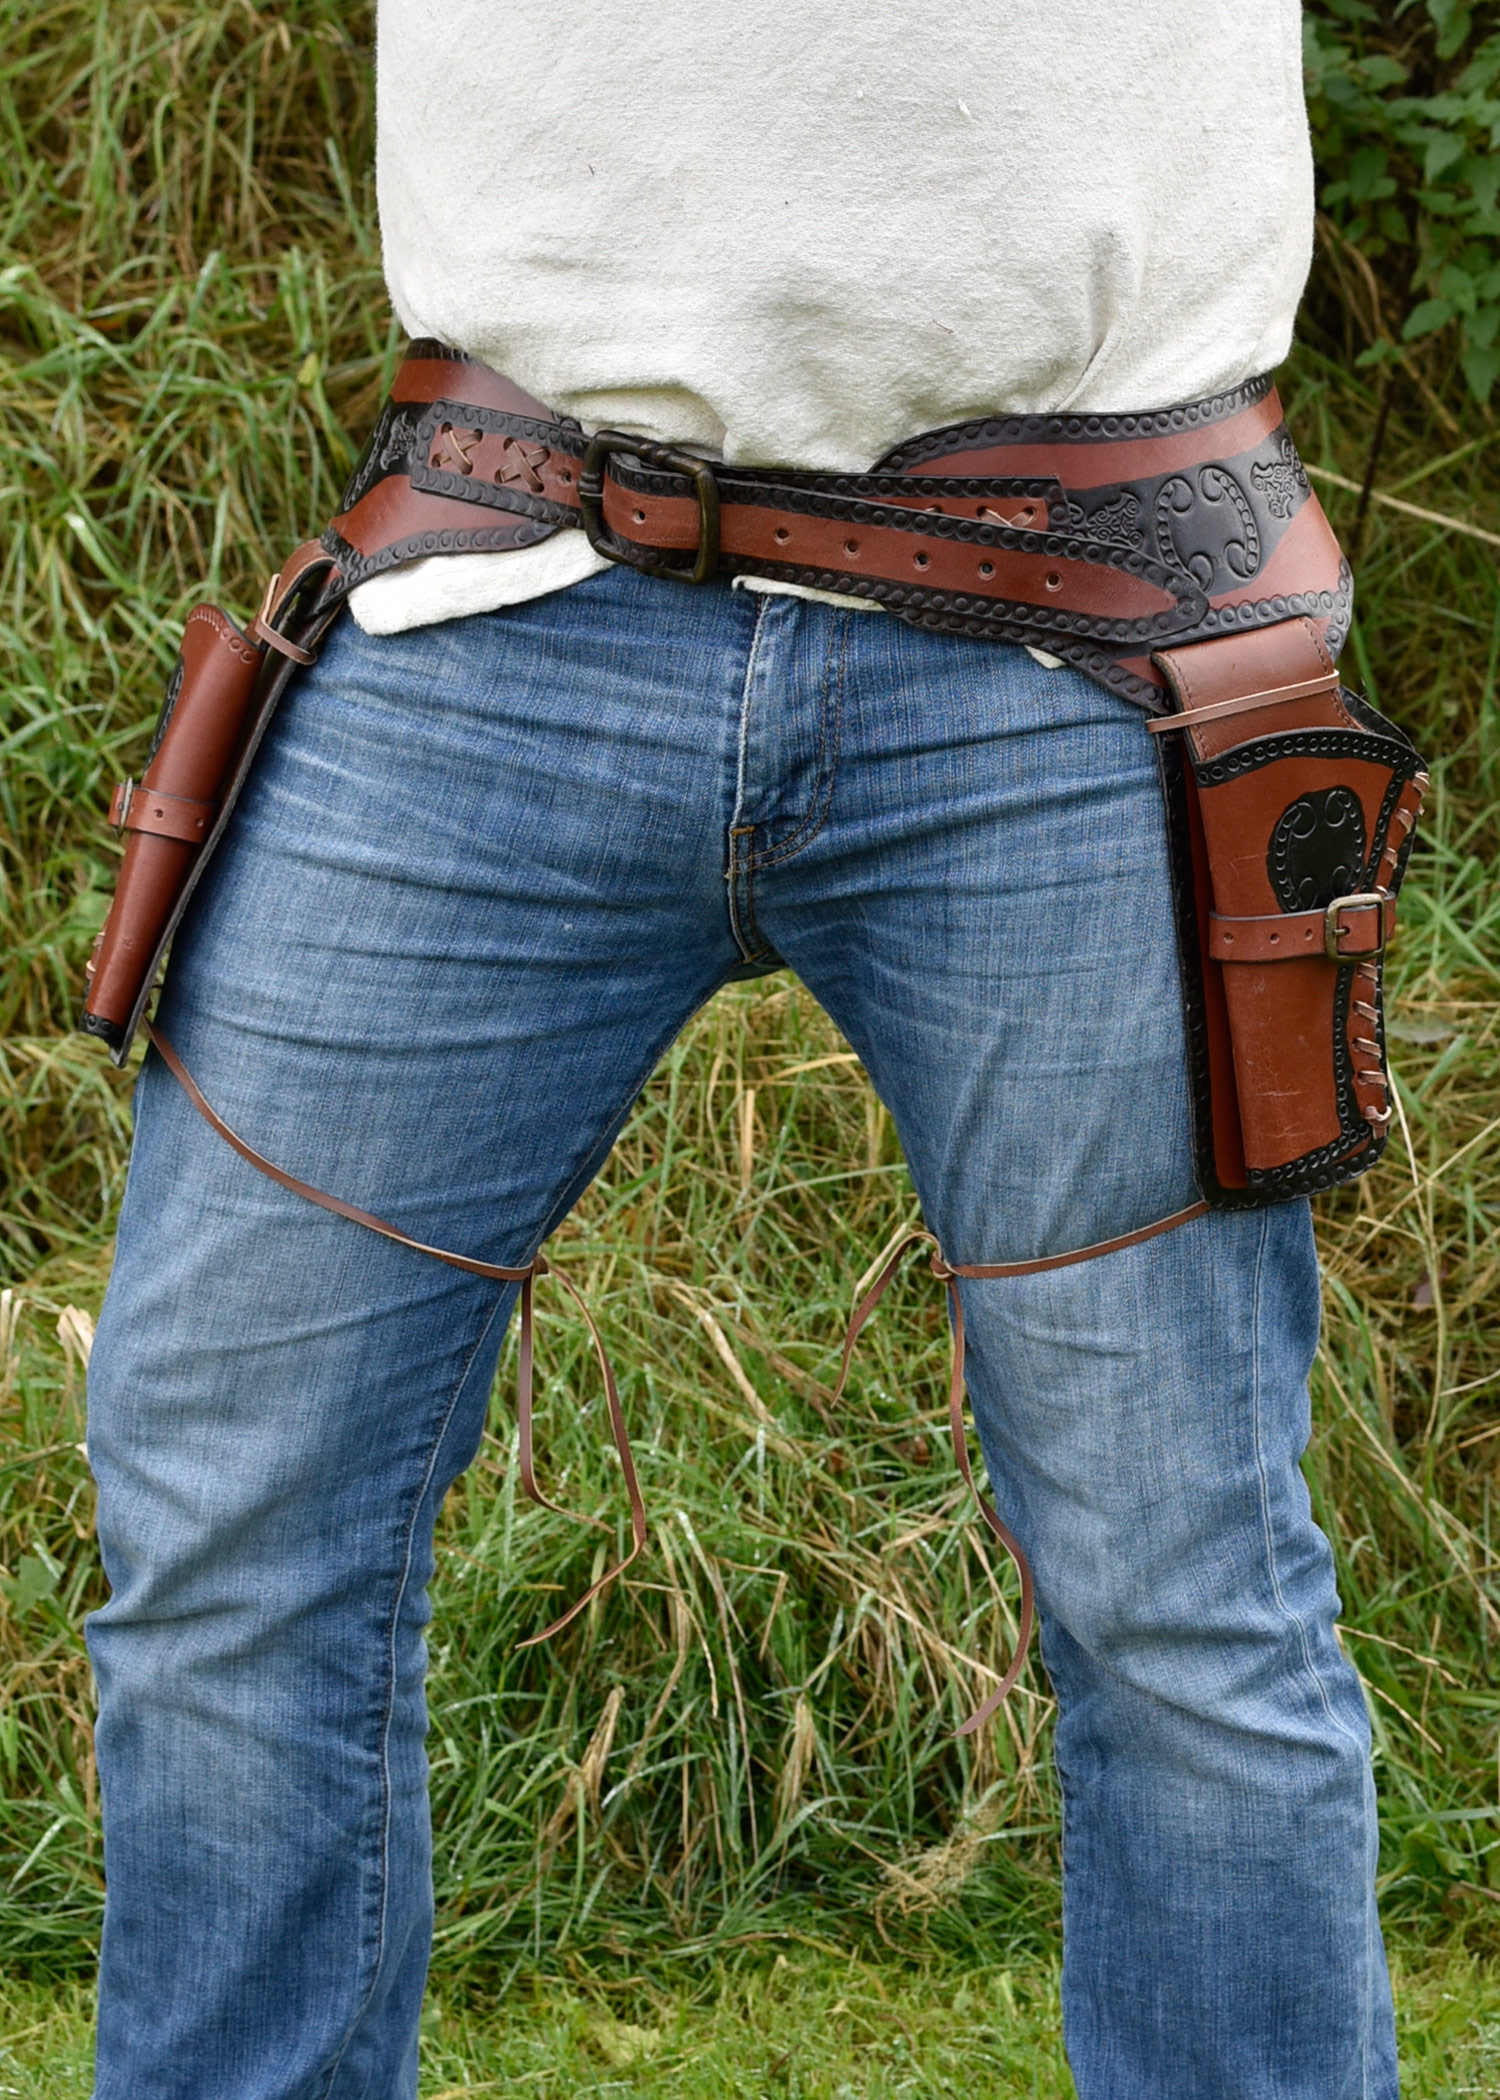 Western Revolver Gürtel mit zwei Holstern